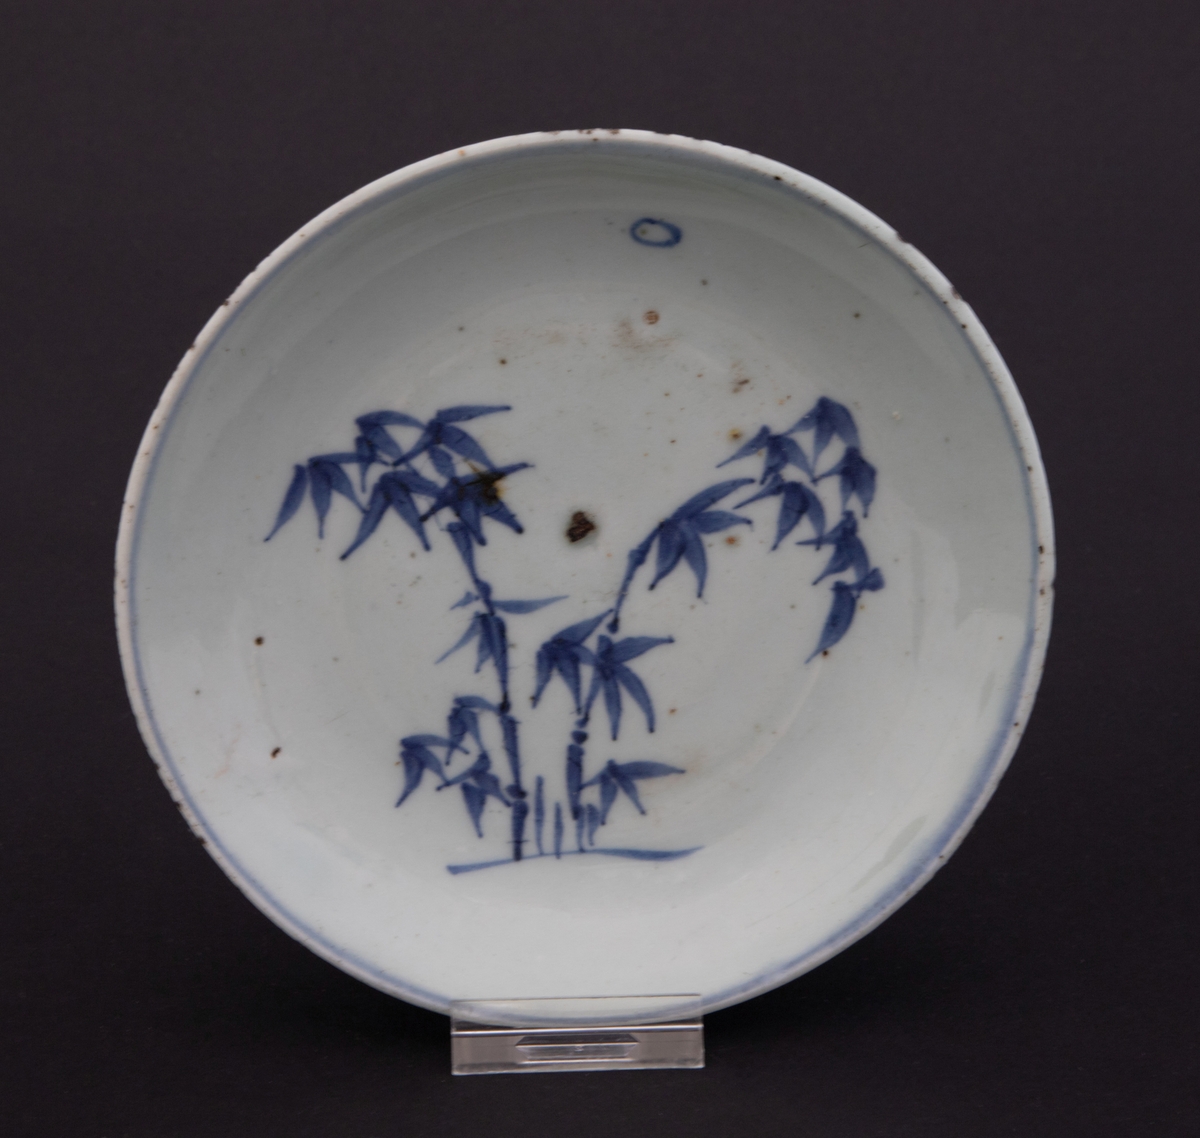 Motiv i koboltblå underglasur som forestiller bambus i måneksinn. Koboltblå ring rundt kanten.